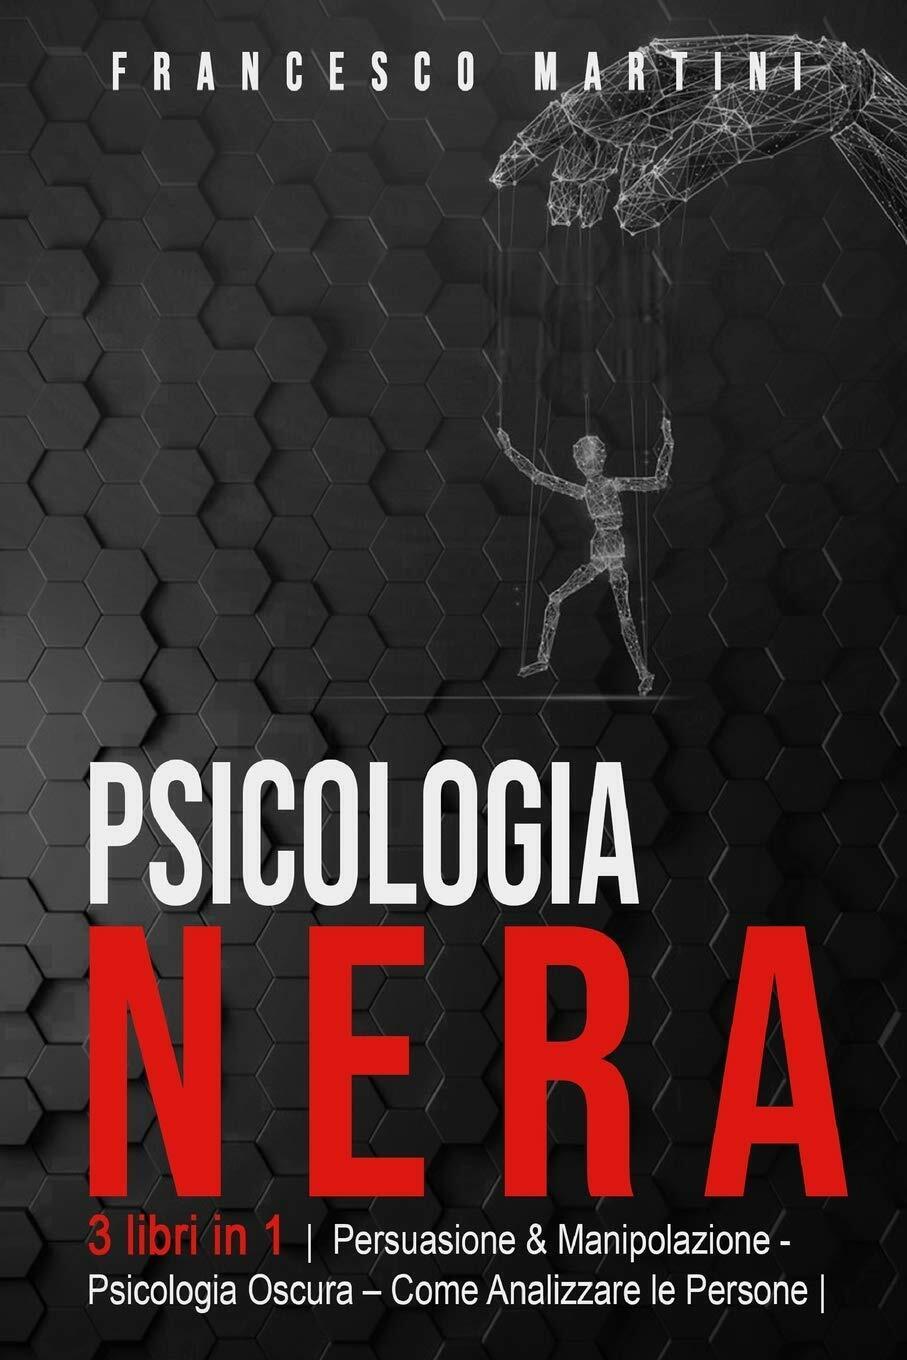 Psicologia Nera 3 libri in 1 Persuasione & Manipolazione - Psicologia Oscura - A